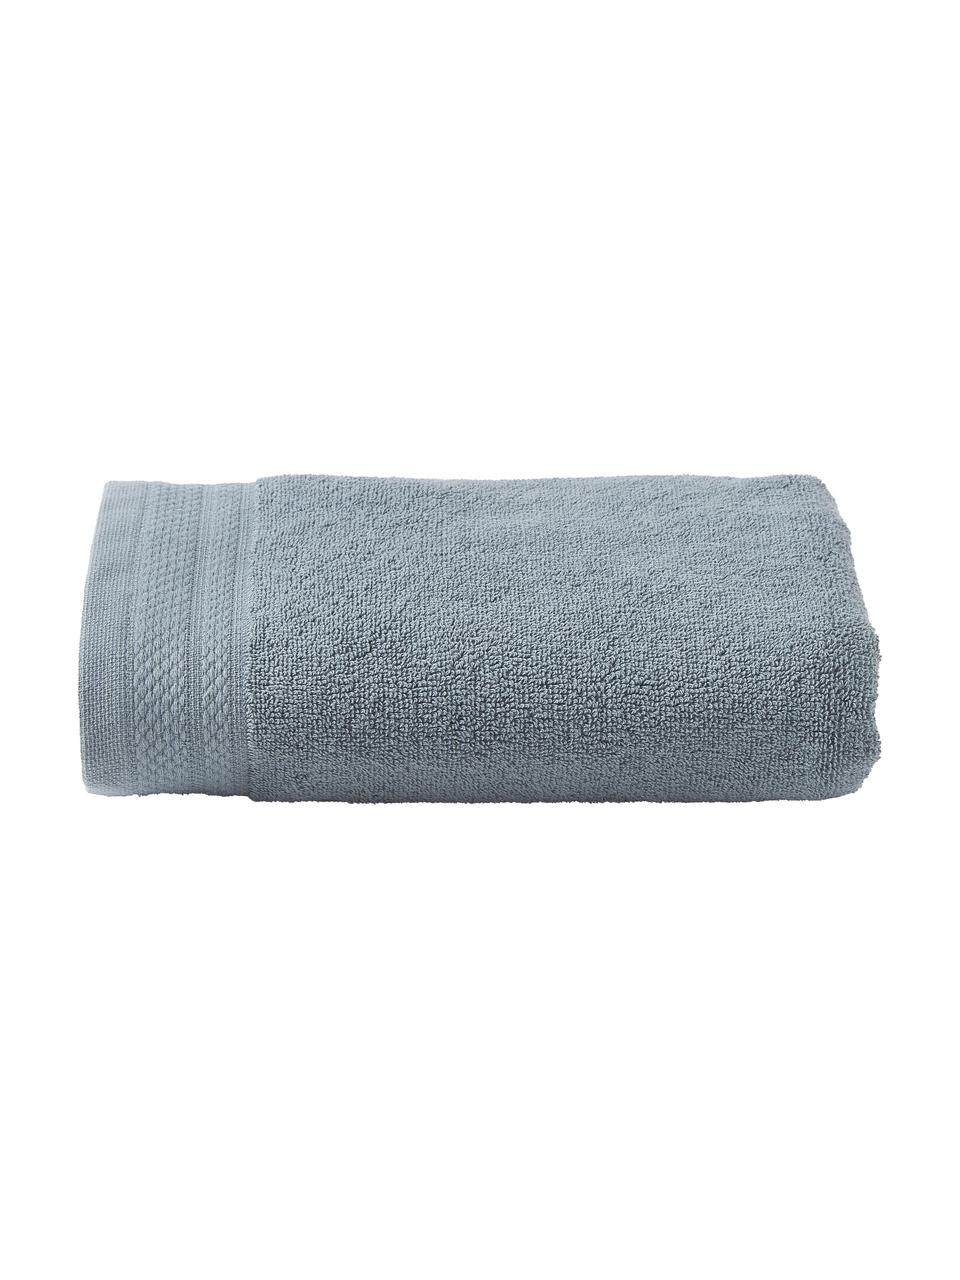 Ręcznik z bawełny organicznej Premium, różne rozmiary, Niebieskozielony, Ręcznik do rąk, S 50 x D 100 cm